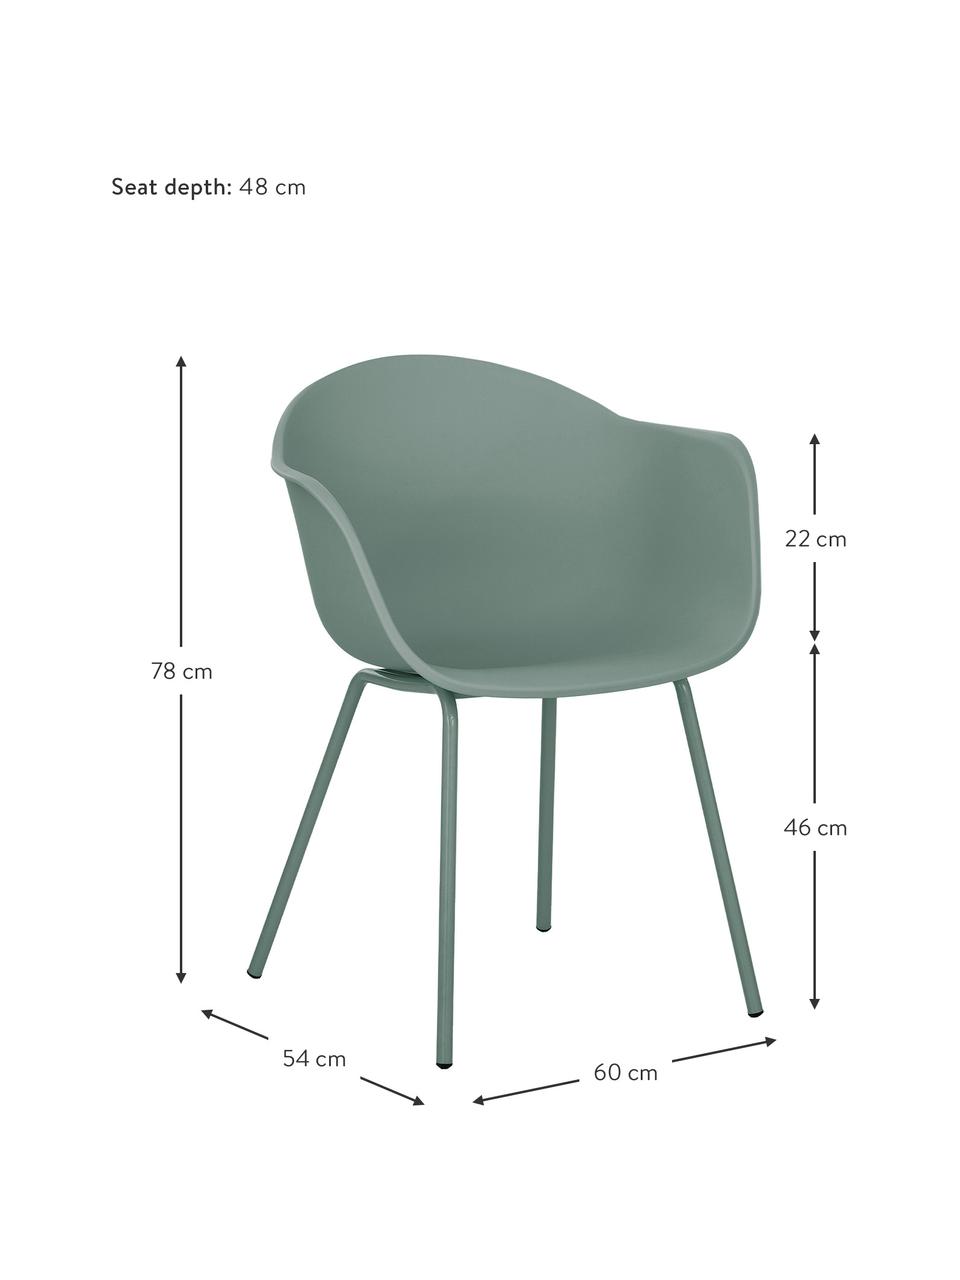 Krzesło z podłokietnikami z tworzywa sztucznego Claire, Nogi: metal malowany proszkowo, Zielony, S 60 x G 54 cm